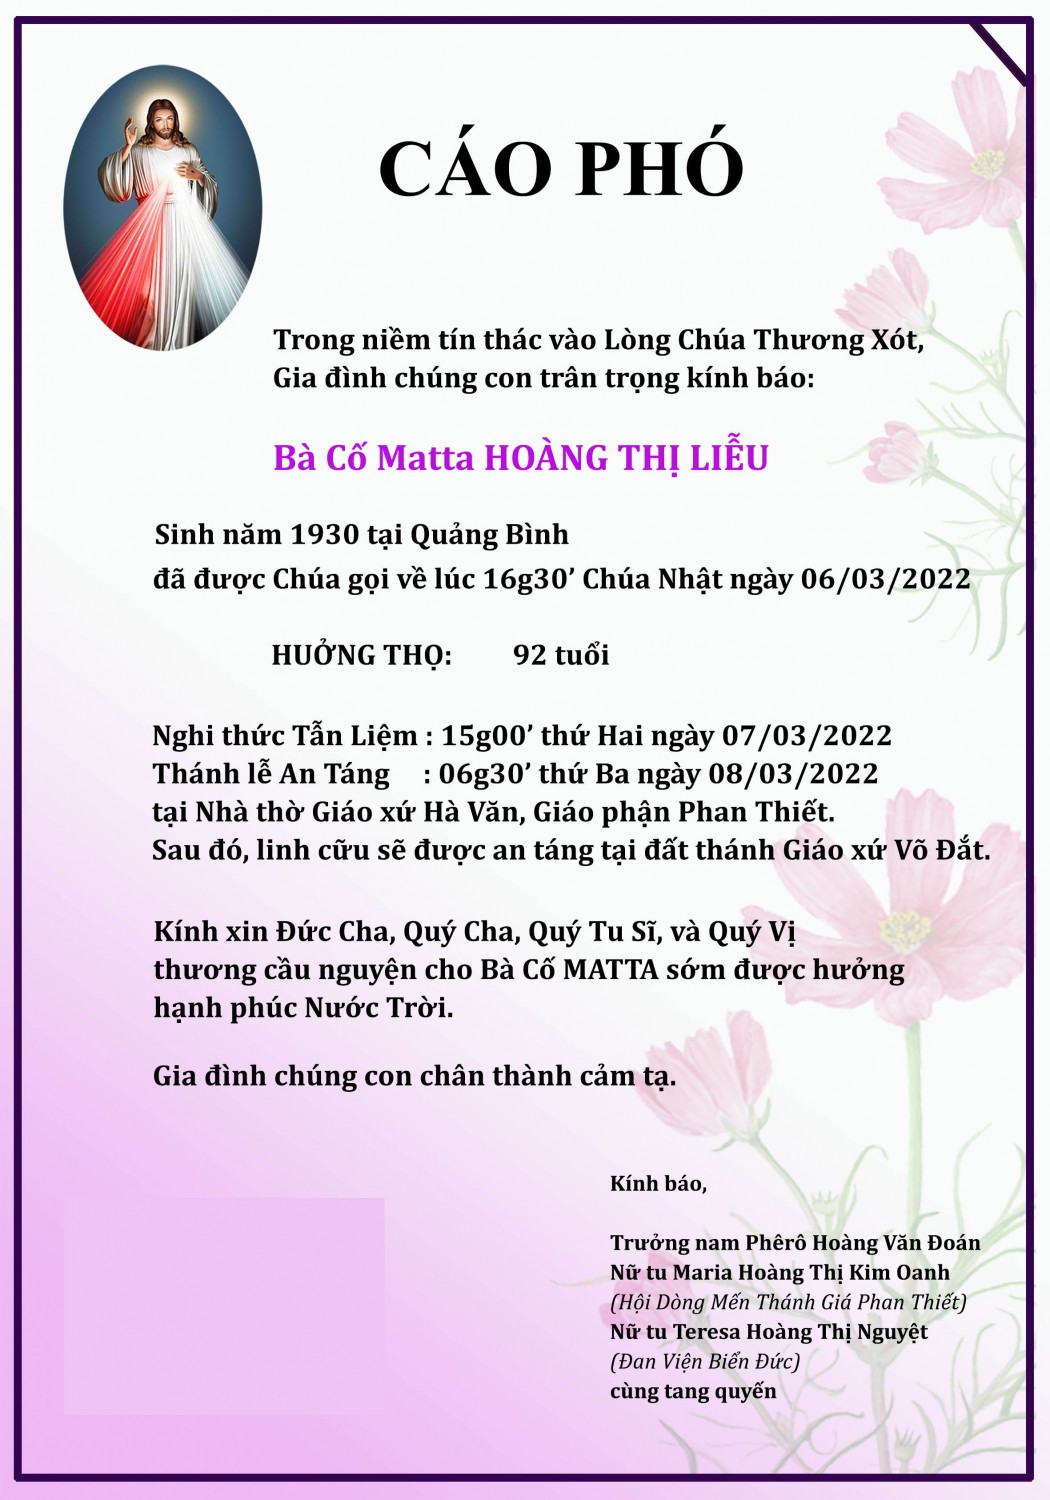 Bà Cô Matta Hoang Thi Lieu (1)